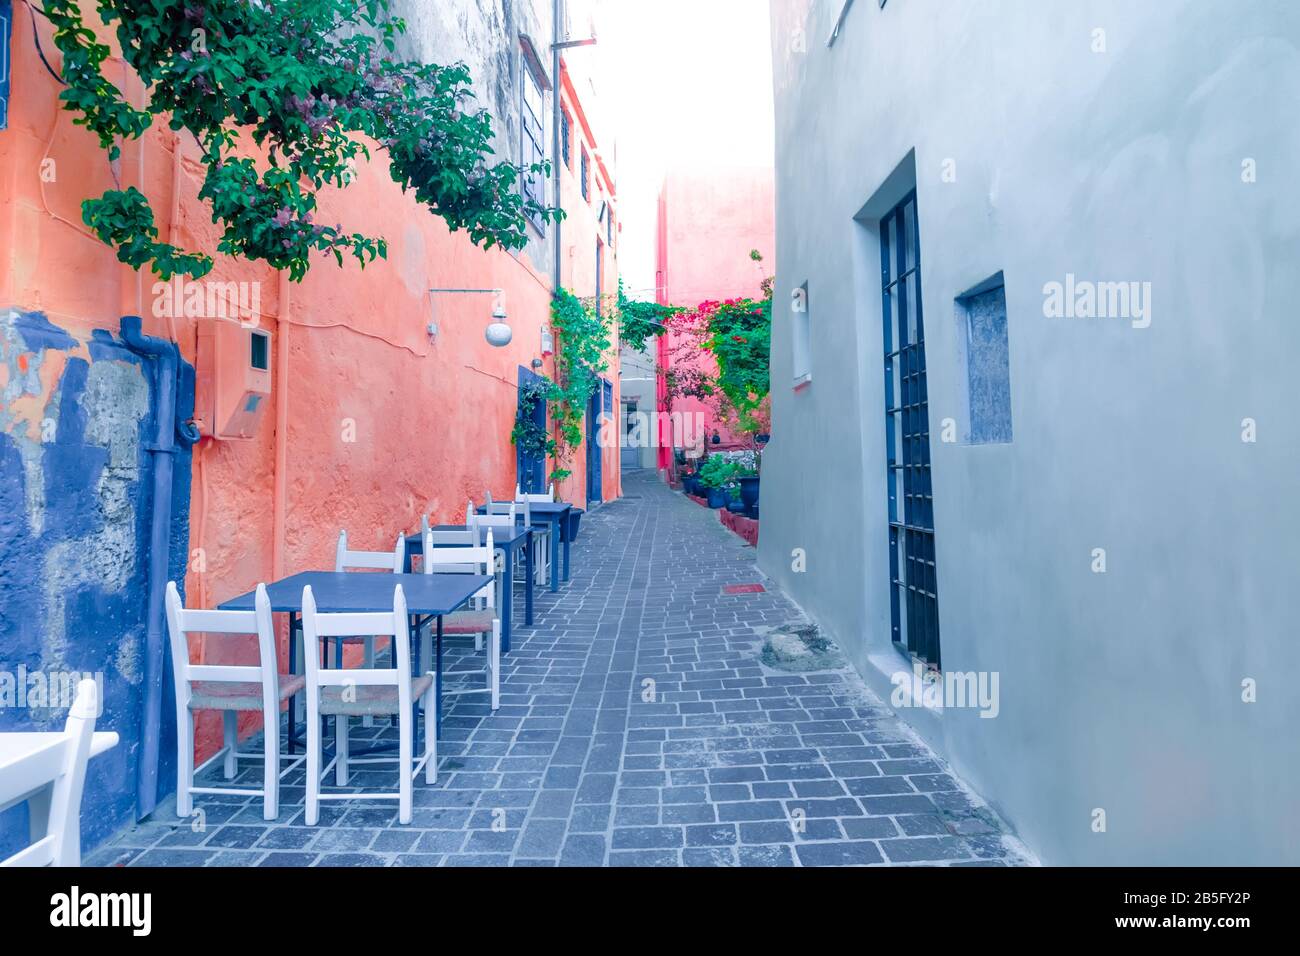 Cafe e ristoranti in incredibili stradine strette di popolare destinazione sull'isola di Creta. Grecia. Architettura tradizionale e colori del mediterraneo ci Foto Stock